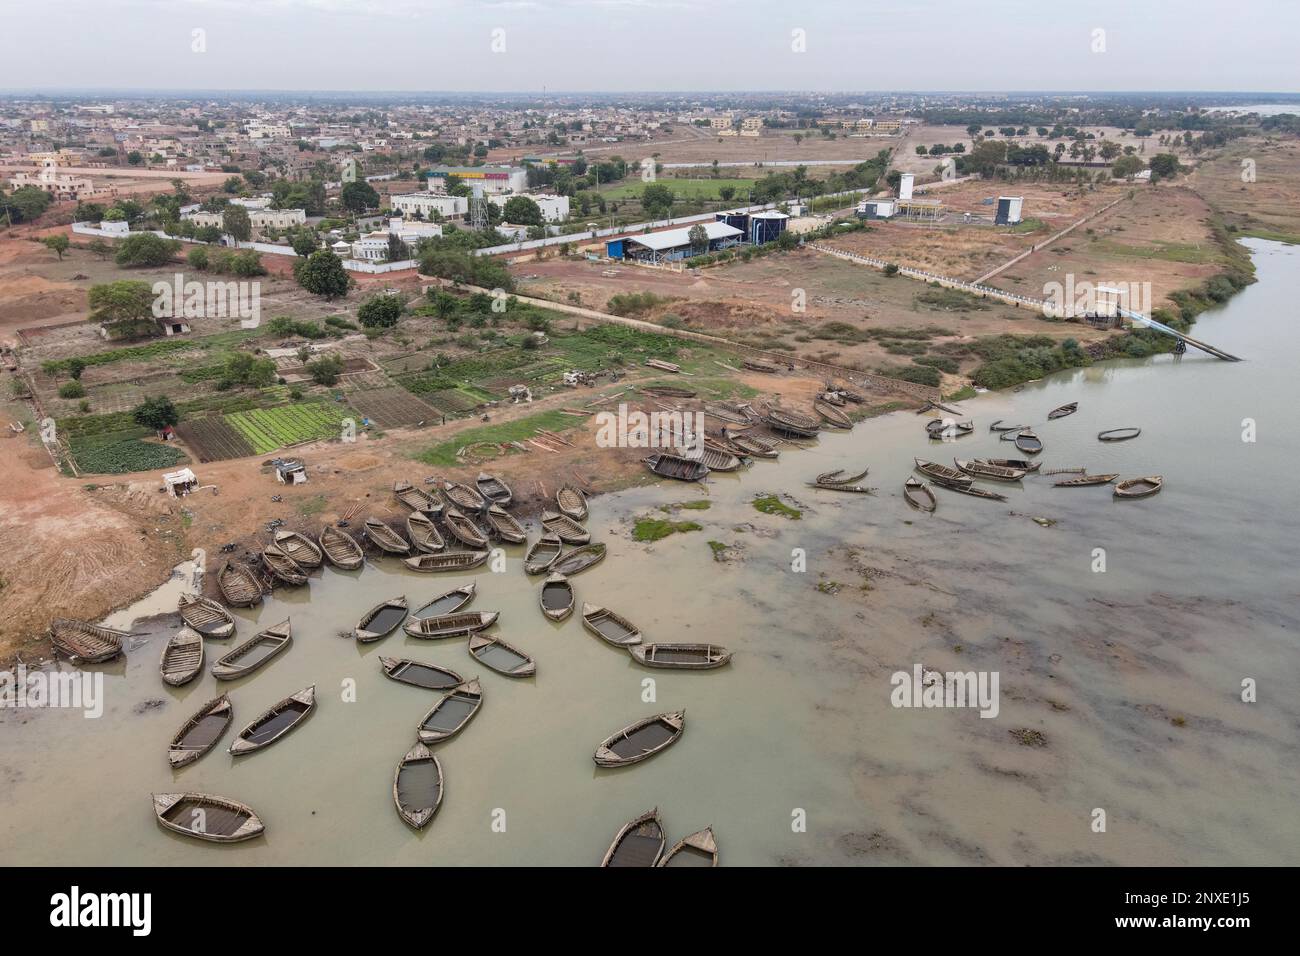 Nicolas Remene / Le Pictorium - Wasseraufbereitungsanlage für den Fluss Kabala Niger. - 19/5/2021 - Mali / Bamako District / Bamako - Luftaufnahme des Kab Stockfoto